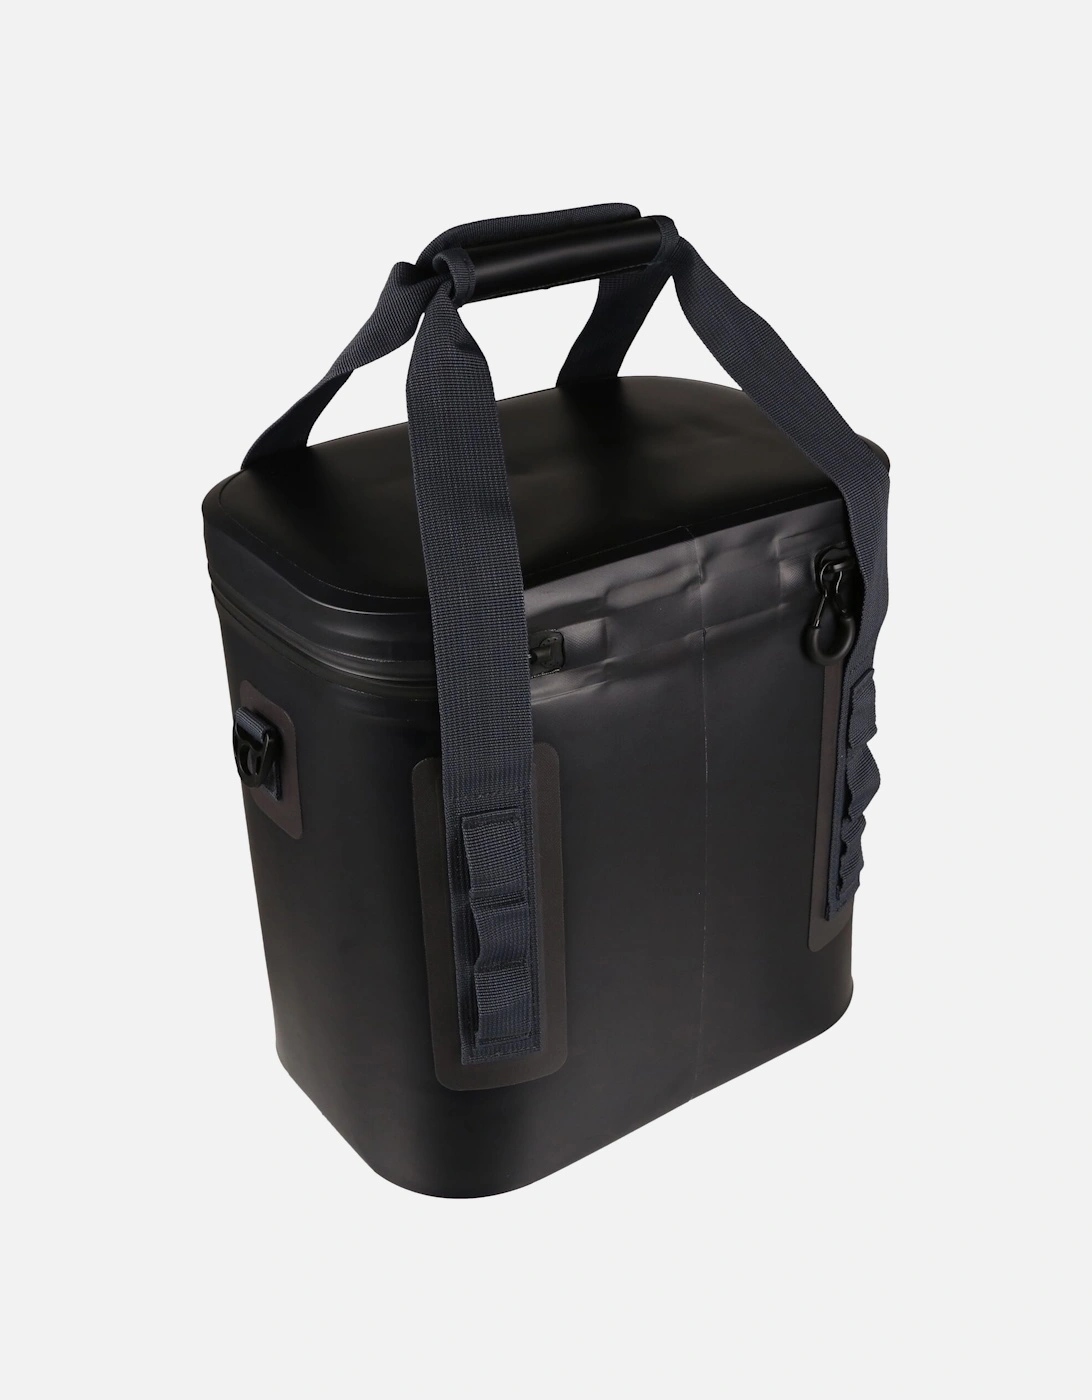 Shield Tarpaulin Cooler Bag